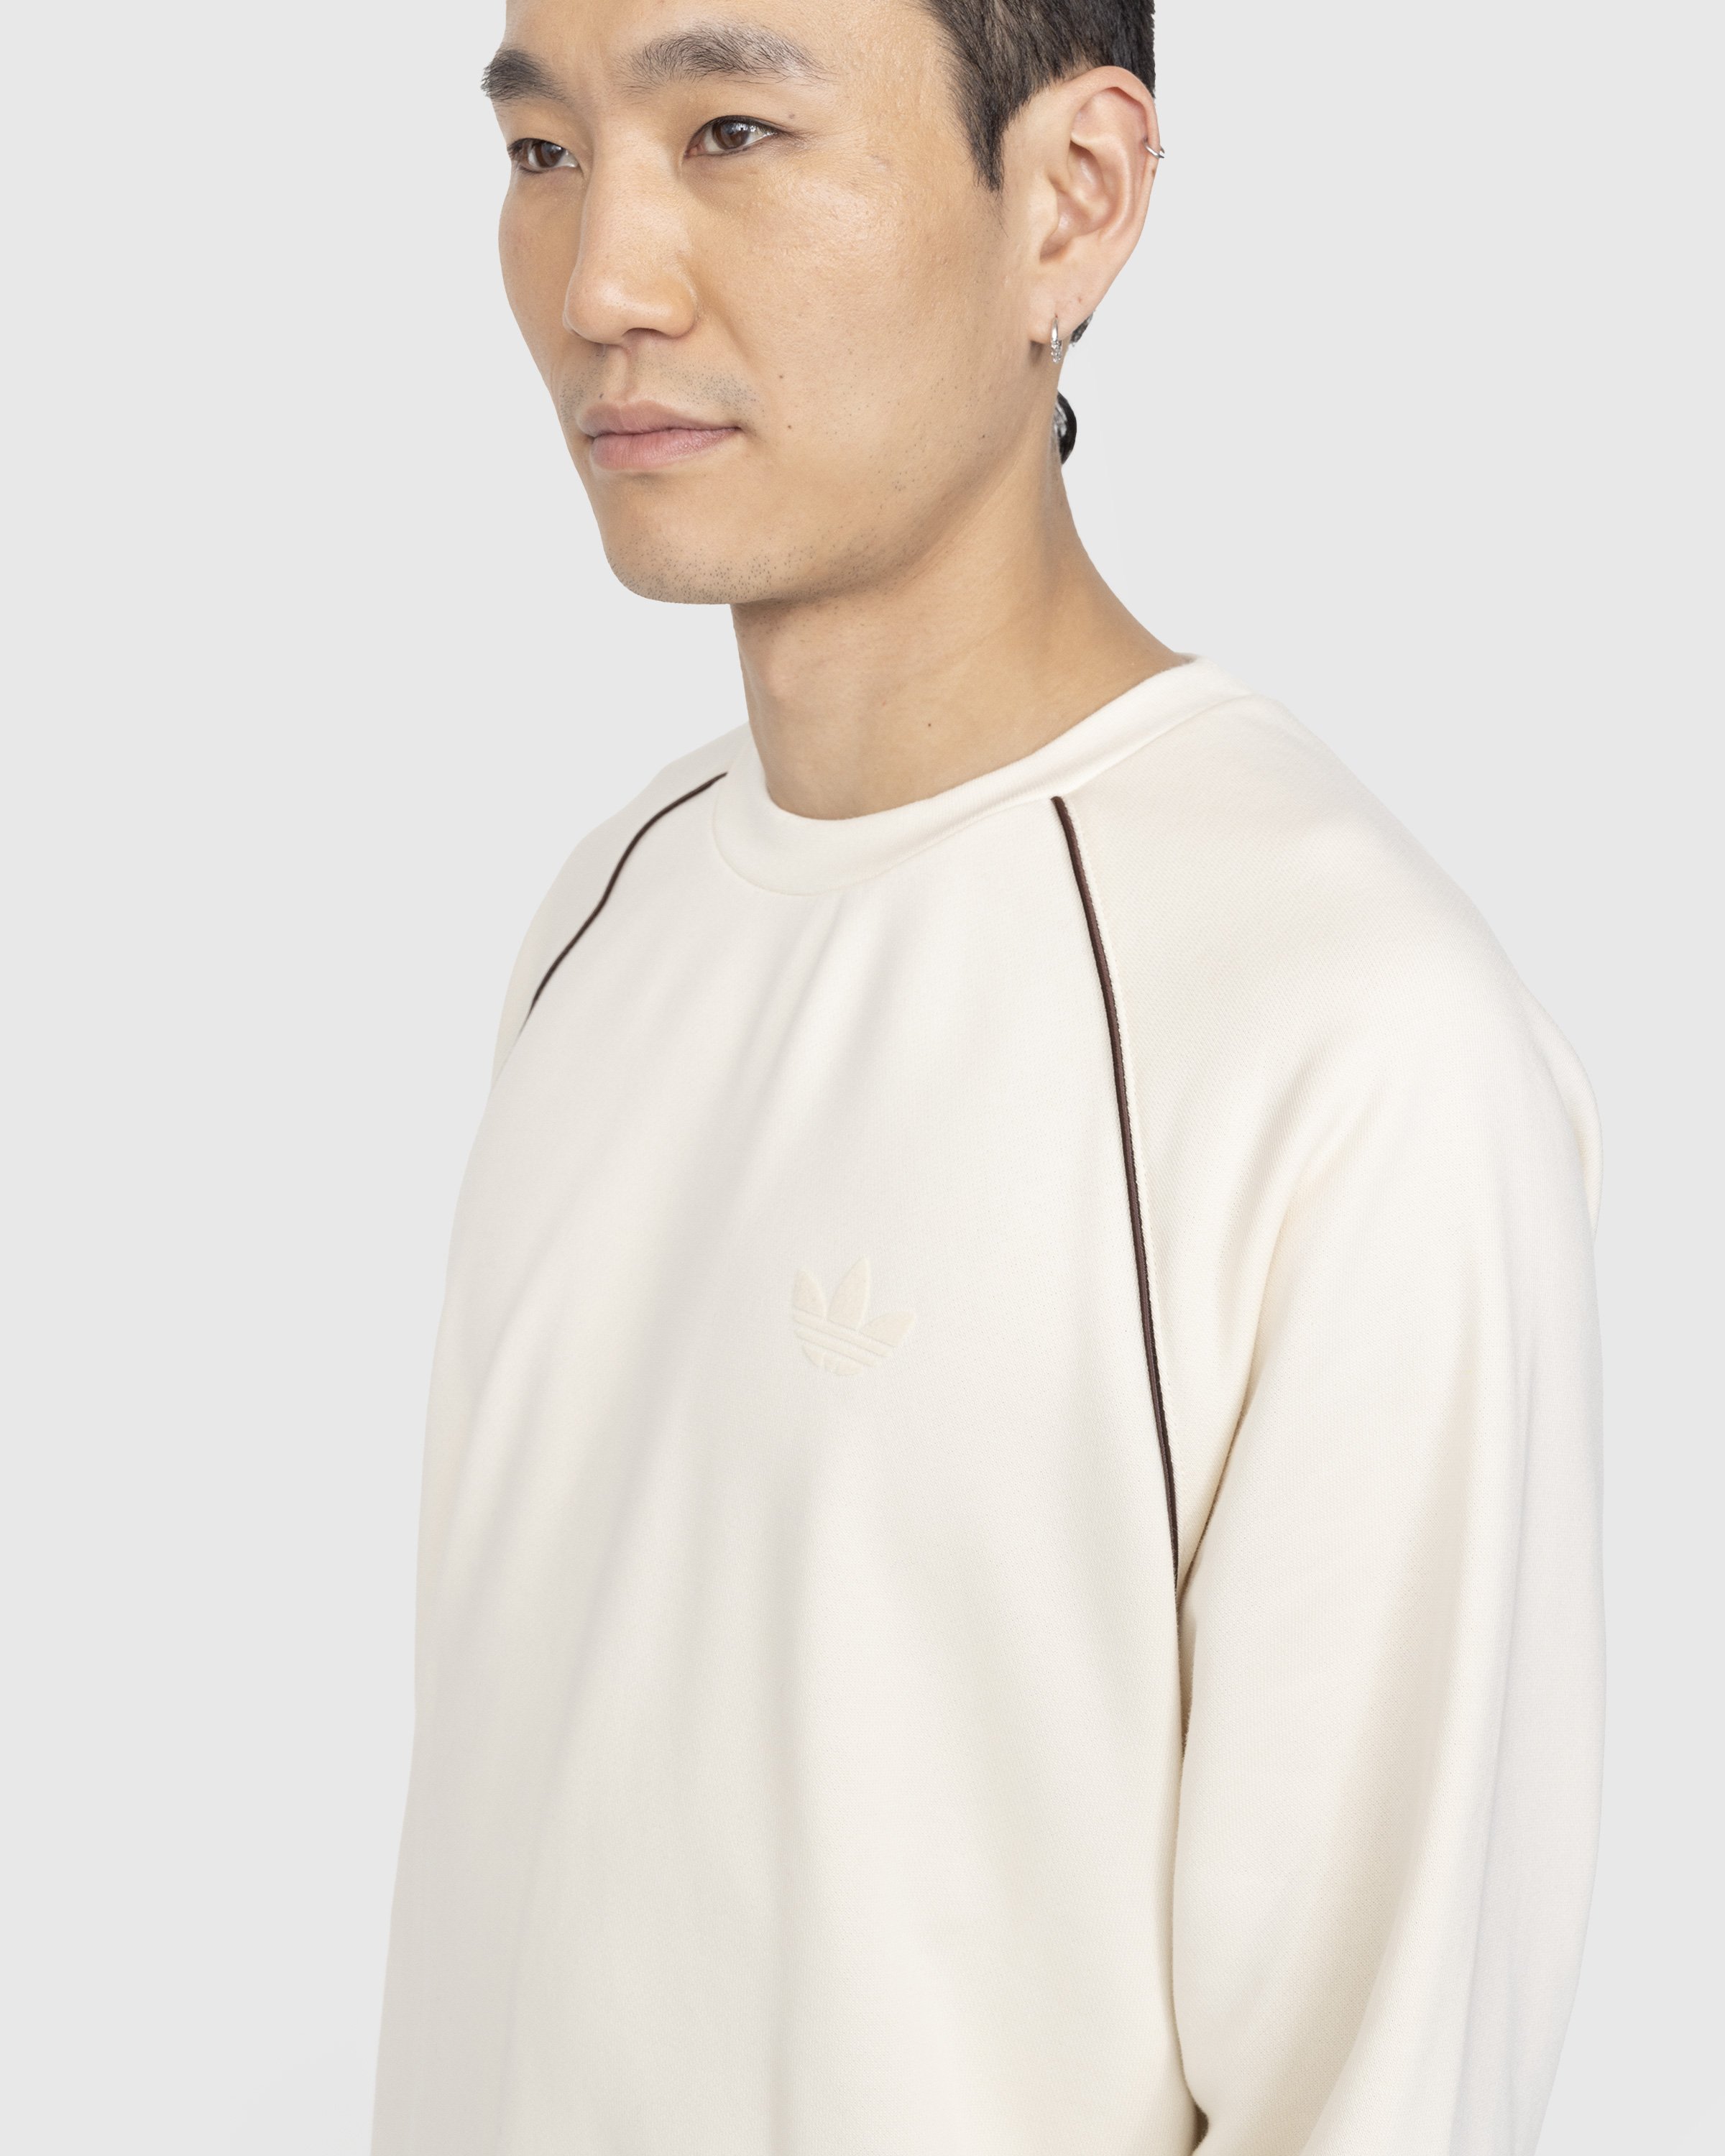 Adidas x Wales Bonner - Crewneck Sweater Wonder White - Clothing - Beige - Image 4